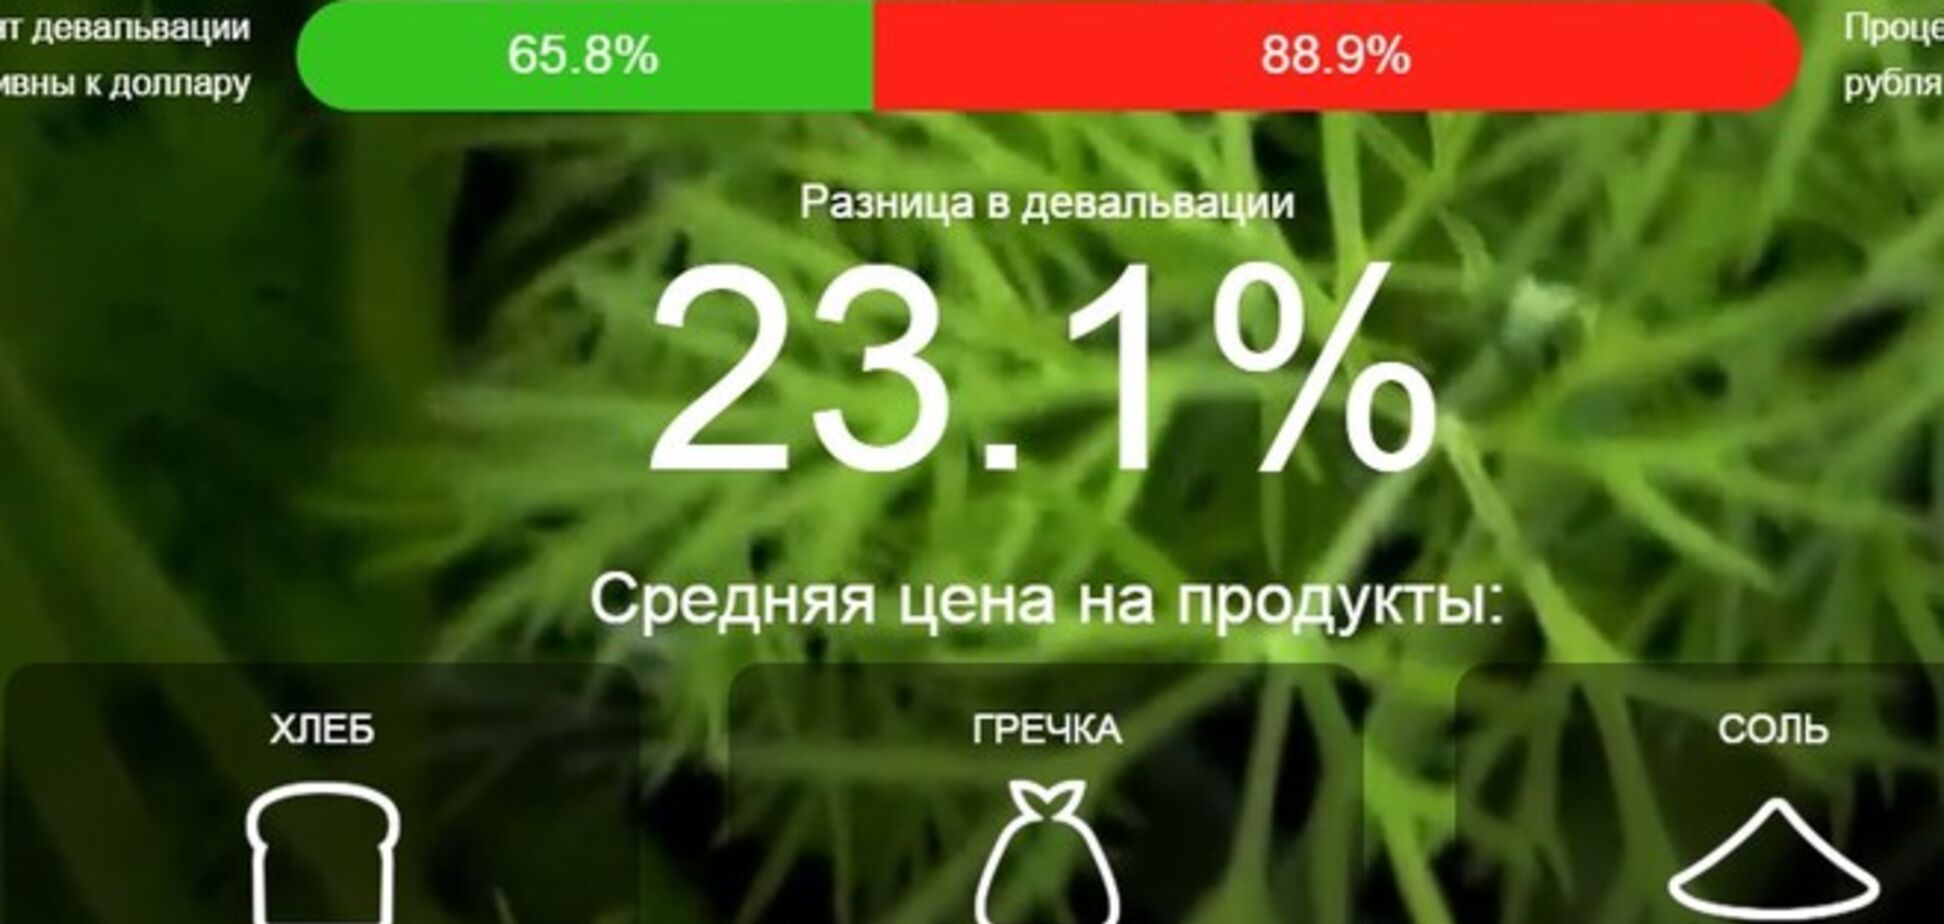 В сети появился сайт, где сравнили украинские и российские цены на продукты и девальвацию валют